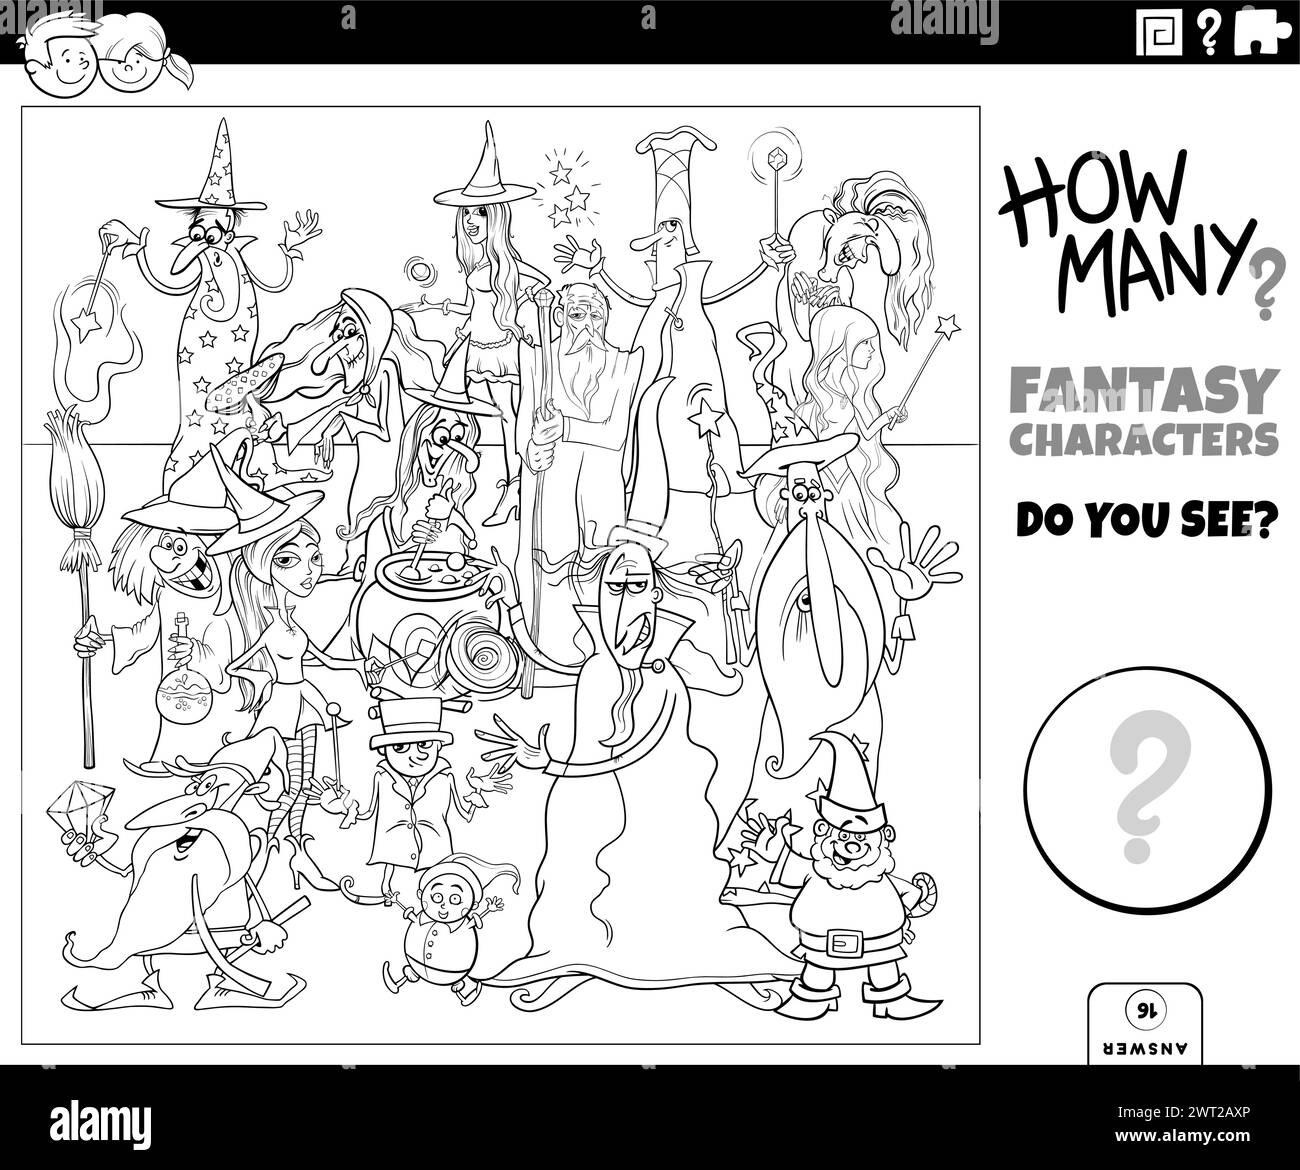 Illustrazione dell'attività didattica di conteggio con la pagina di colorazione dei personaggi fantasy dei cartoni animati Illustrazione Vettoriale